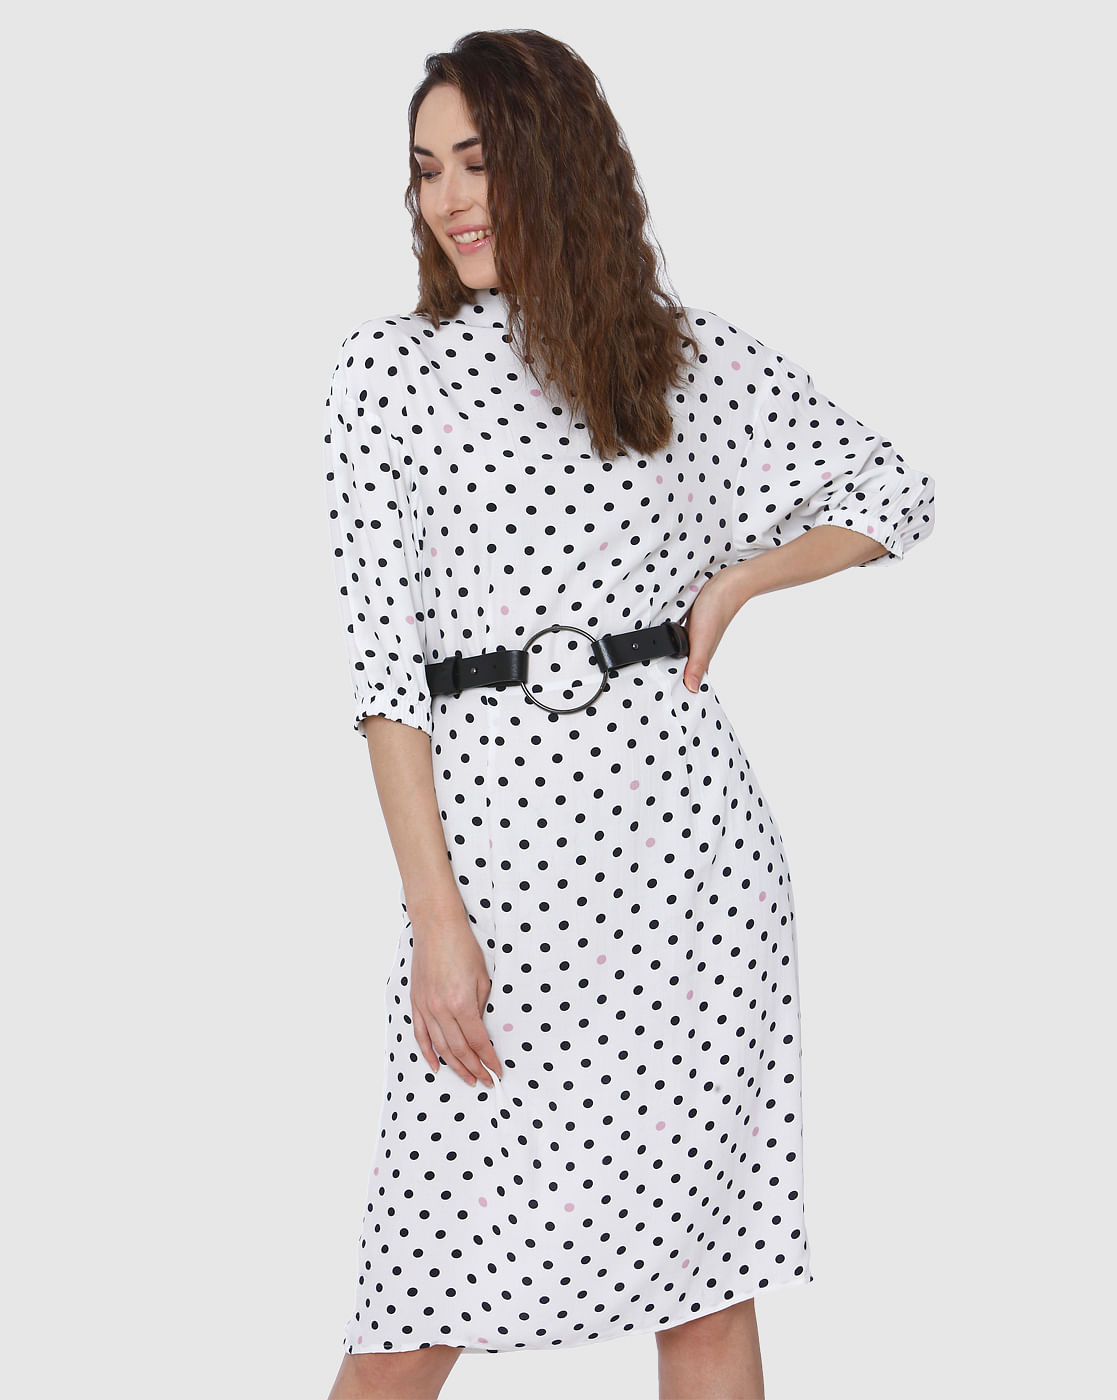 white polka dot dress midi